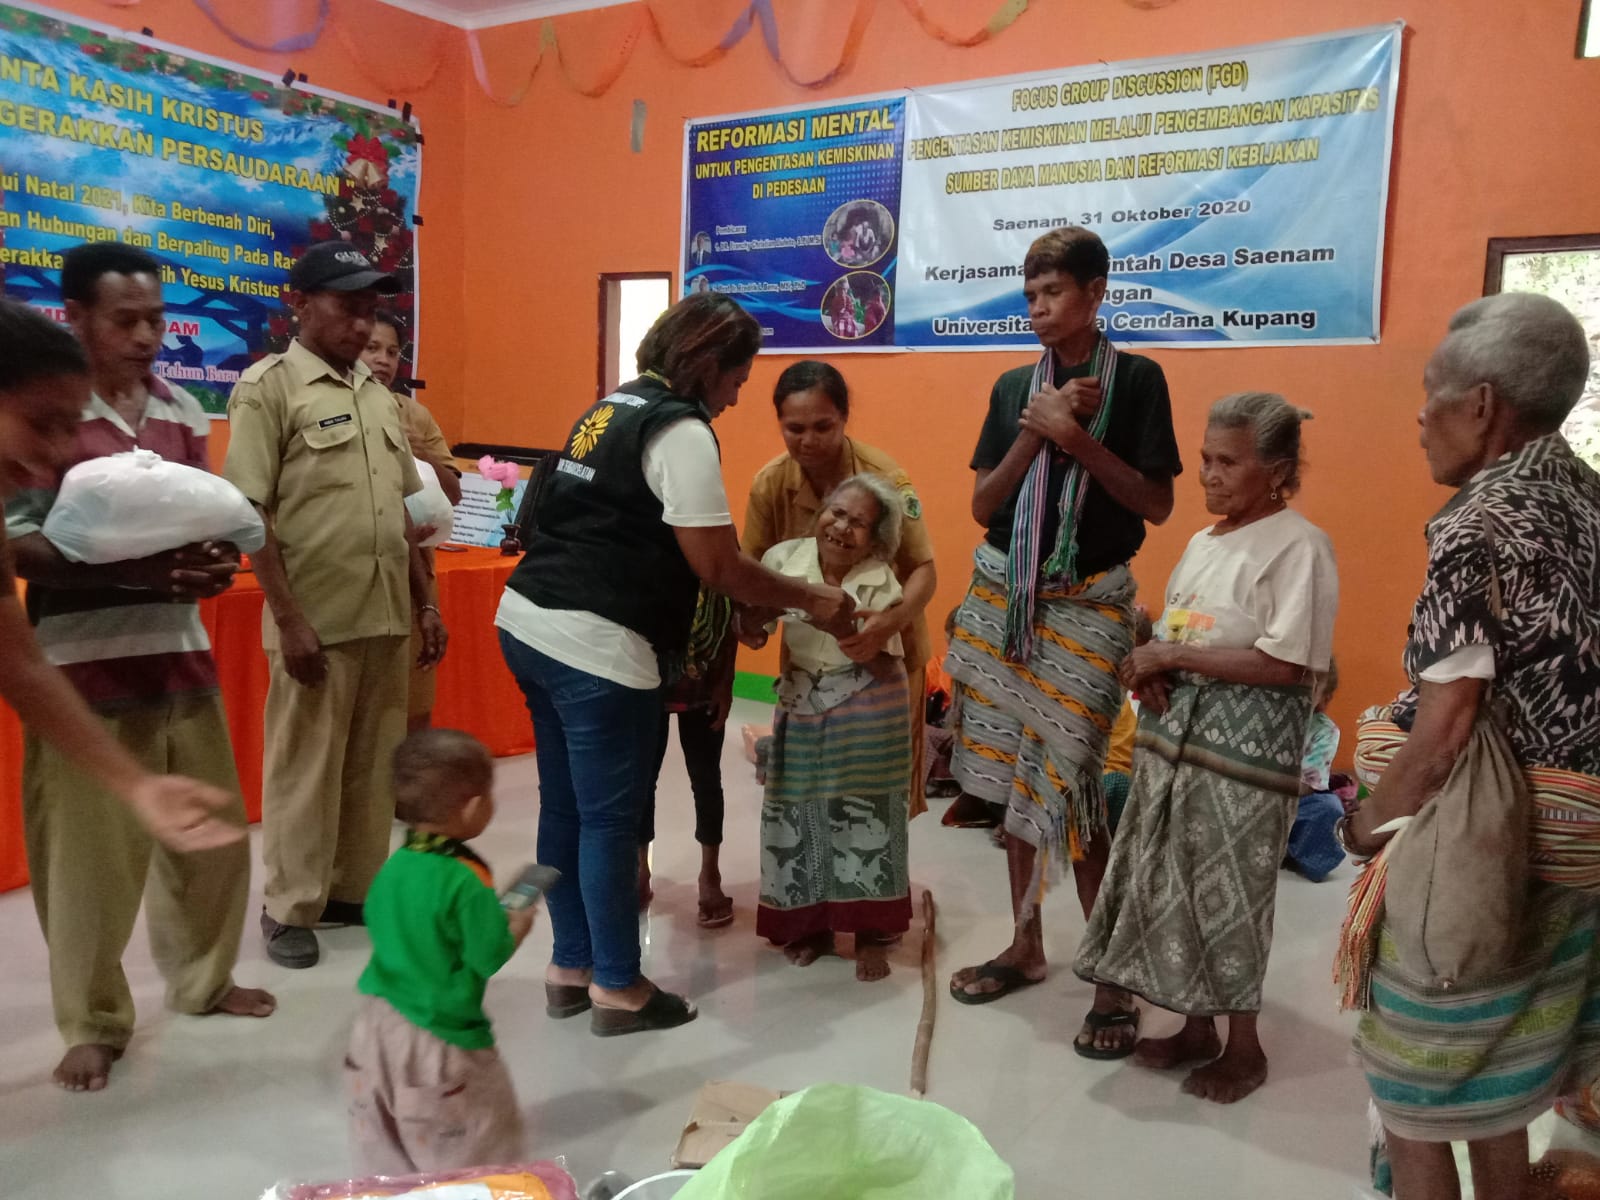 RCC Menjangkau Puluhan KK Miskin dan Penyandang Disabilitas di Desa Saenam, TTS